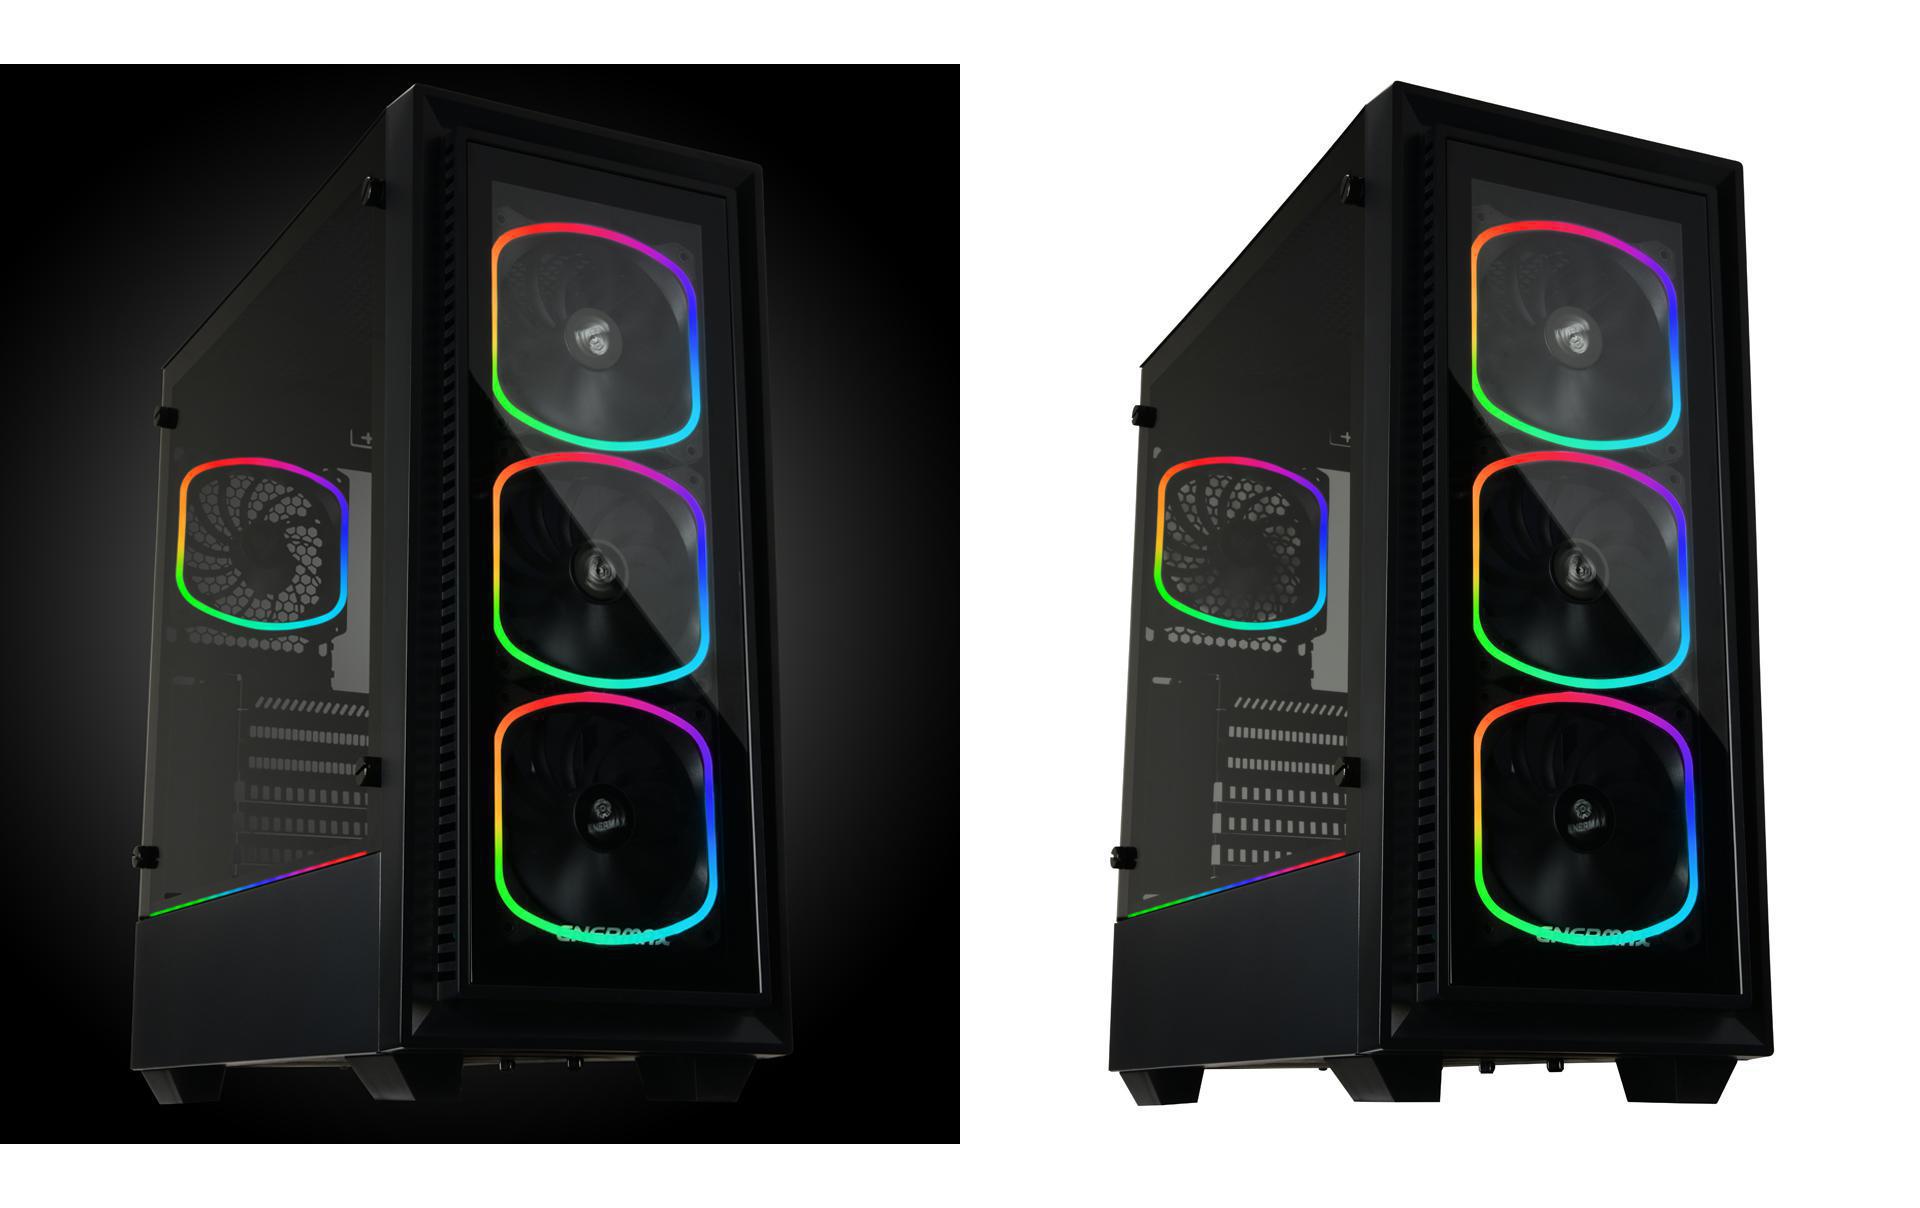 Enermax PC-Gehäuse StarryFort SF30 Addressable RGB Case